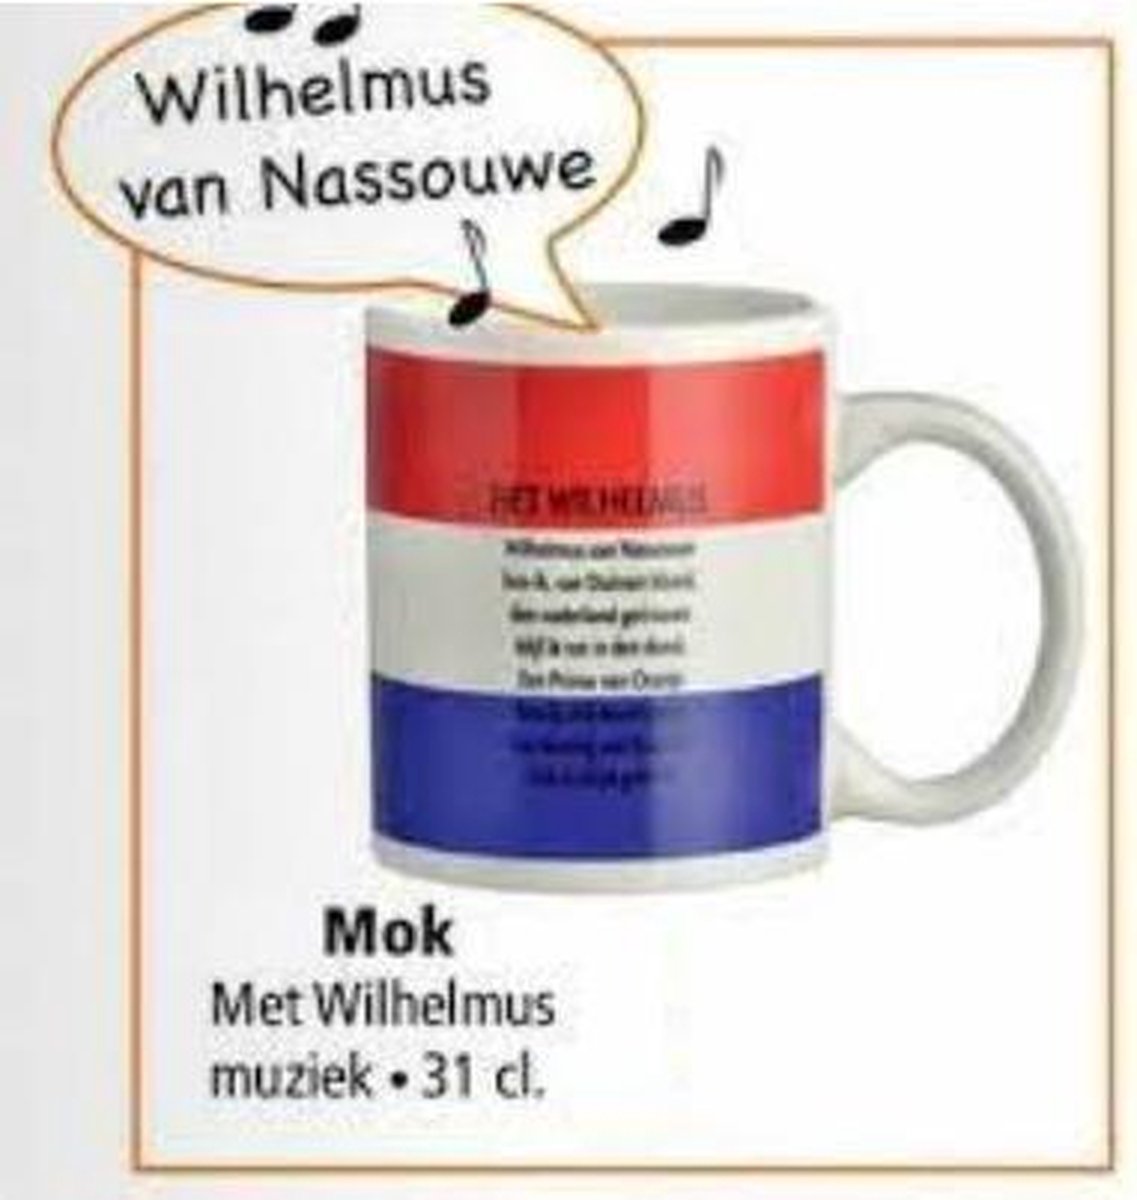 Wilhelmus koffie mok - Koffiekopje - Koningsdag accessoires – Koningsdag artikelen – Oranje versiering - Muziekmok